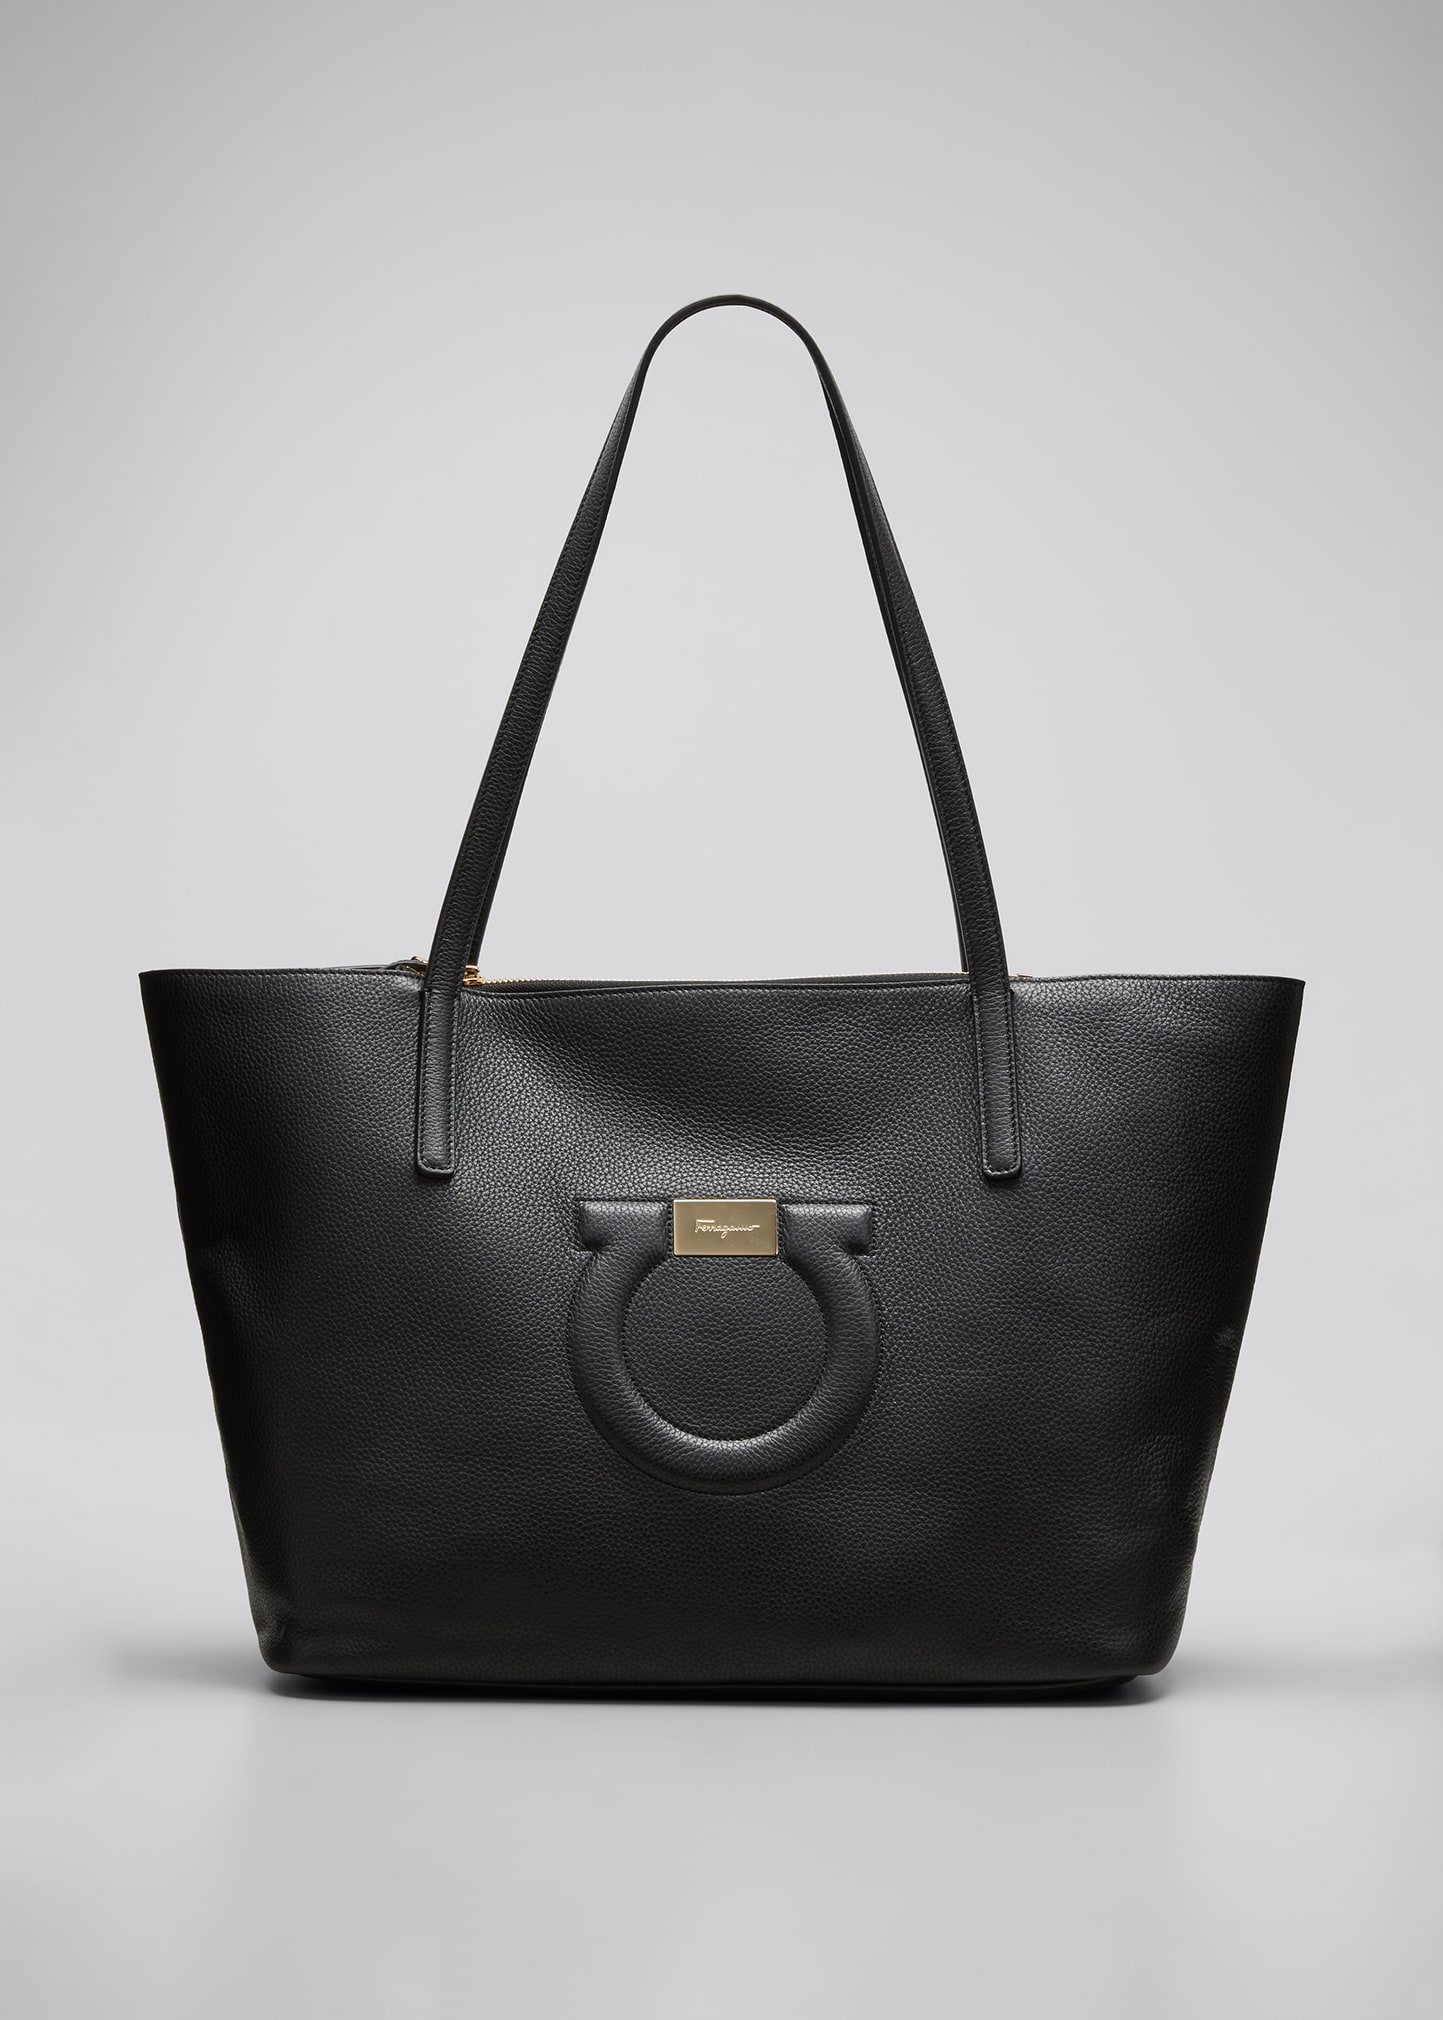 Salvatore Ferragamo City Medium Leather Shoulder Tote Bag